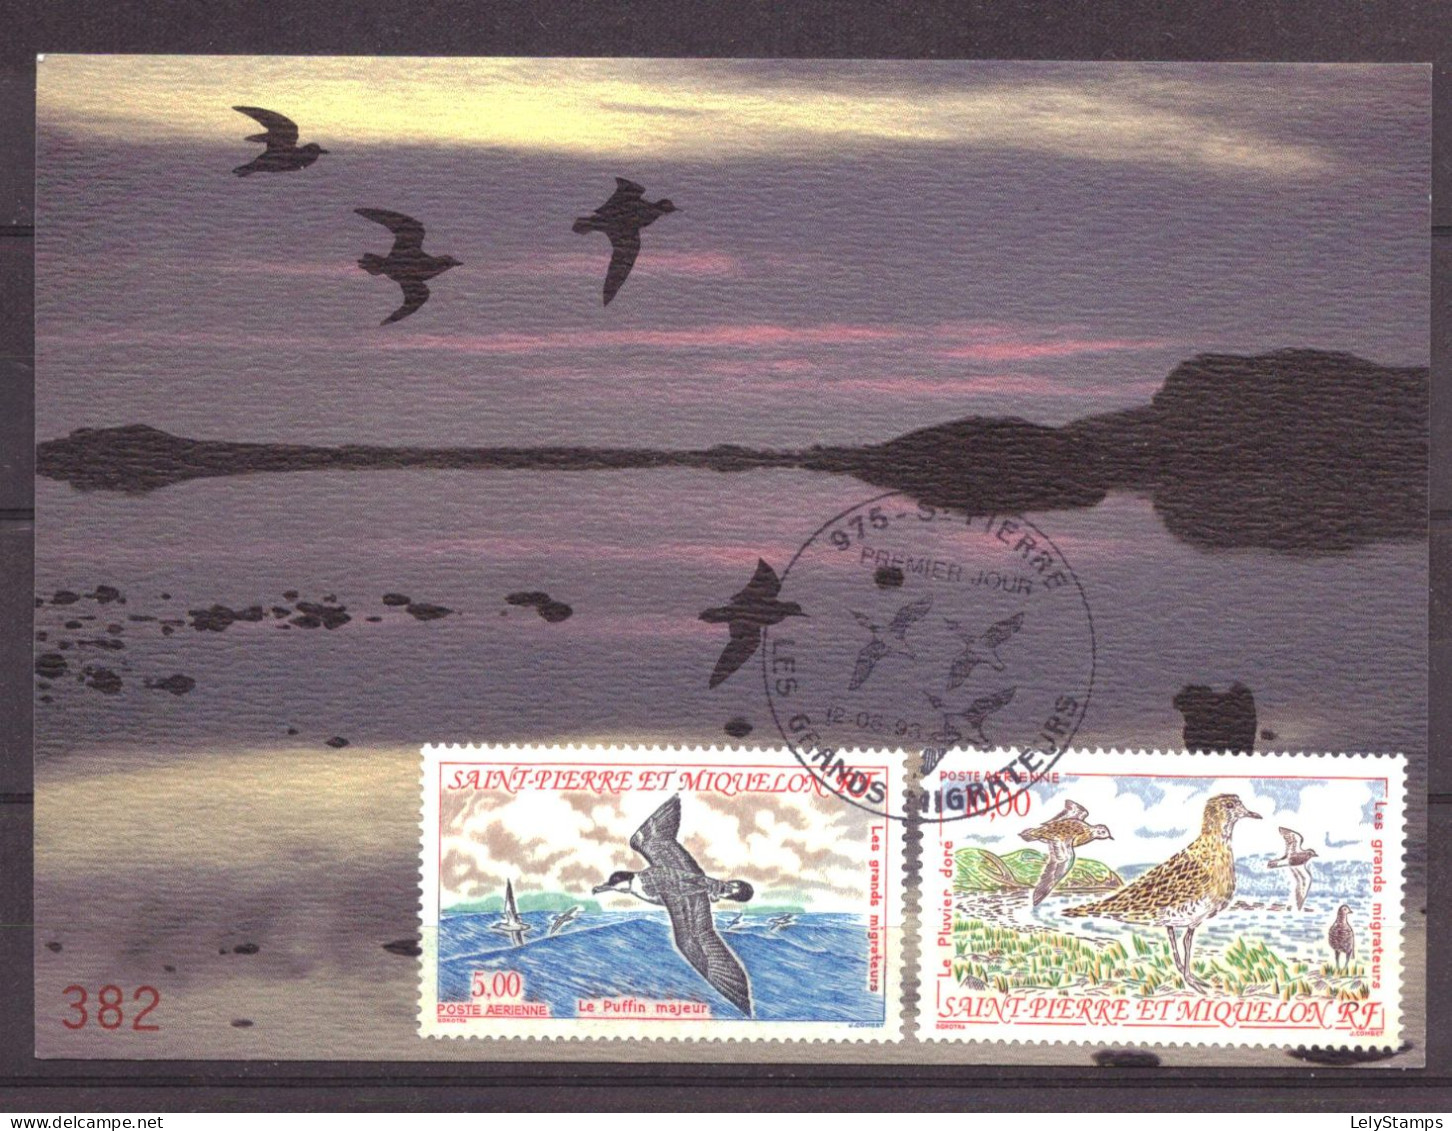 Saint-Pierre En Miquelon 654 & 655 FDC Birds Animals Nature (1993) - Cartes-maximum